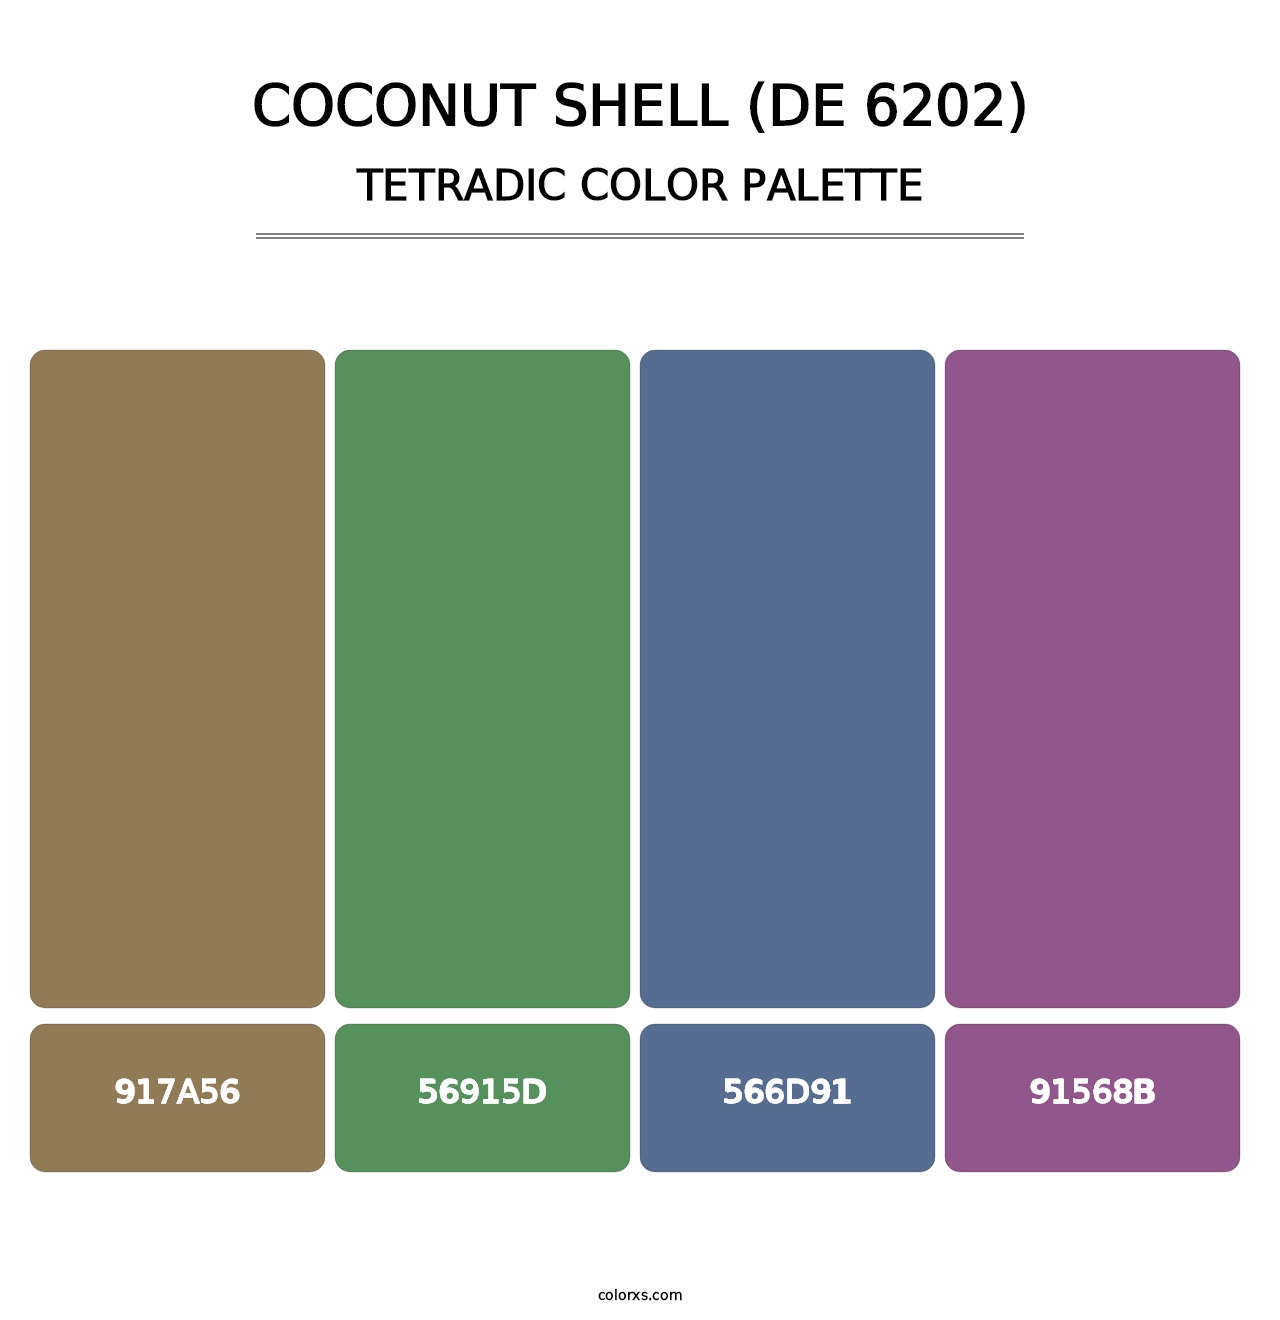 Coconut Shell (DE 6202) - Tetradic Color Palette